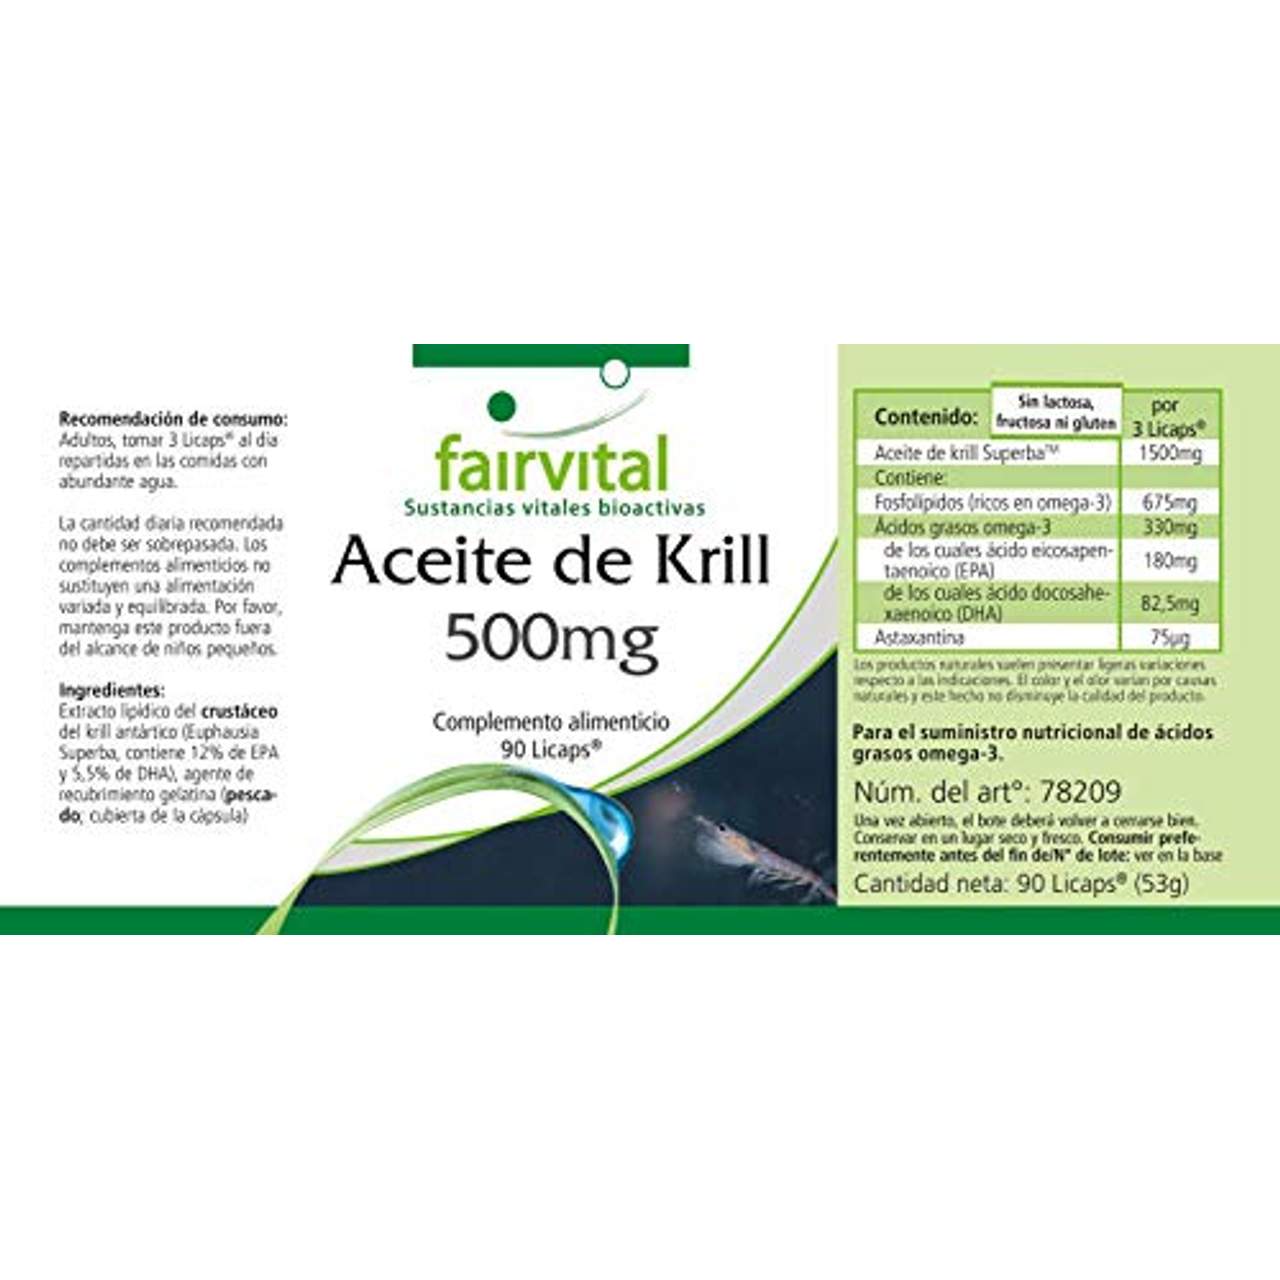 fairvital Krill-Öl Kapseln 500mg